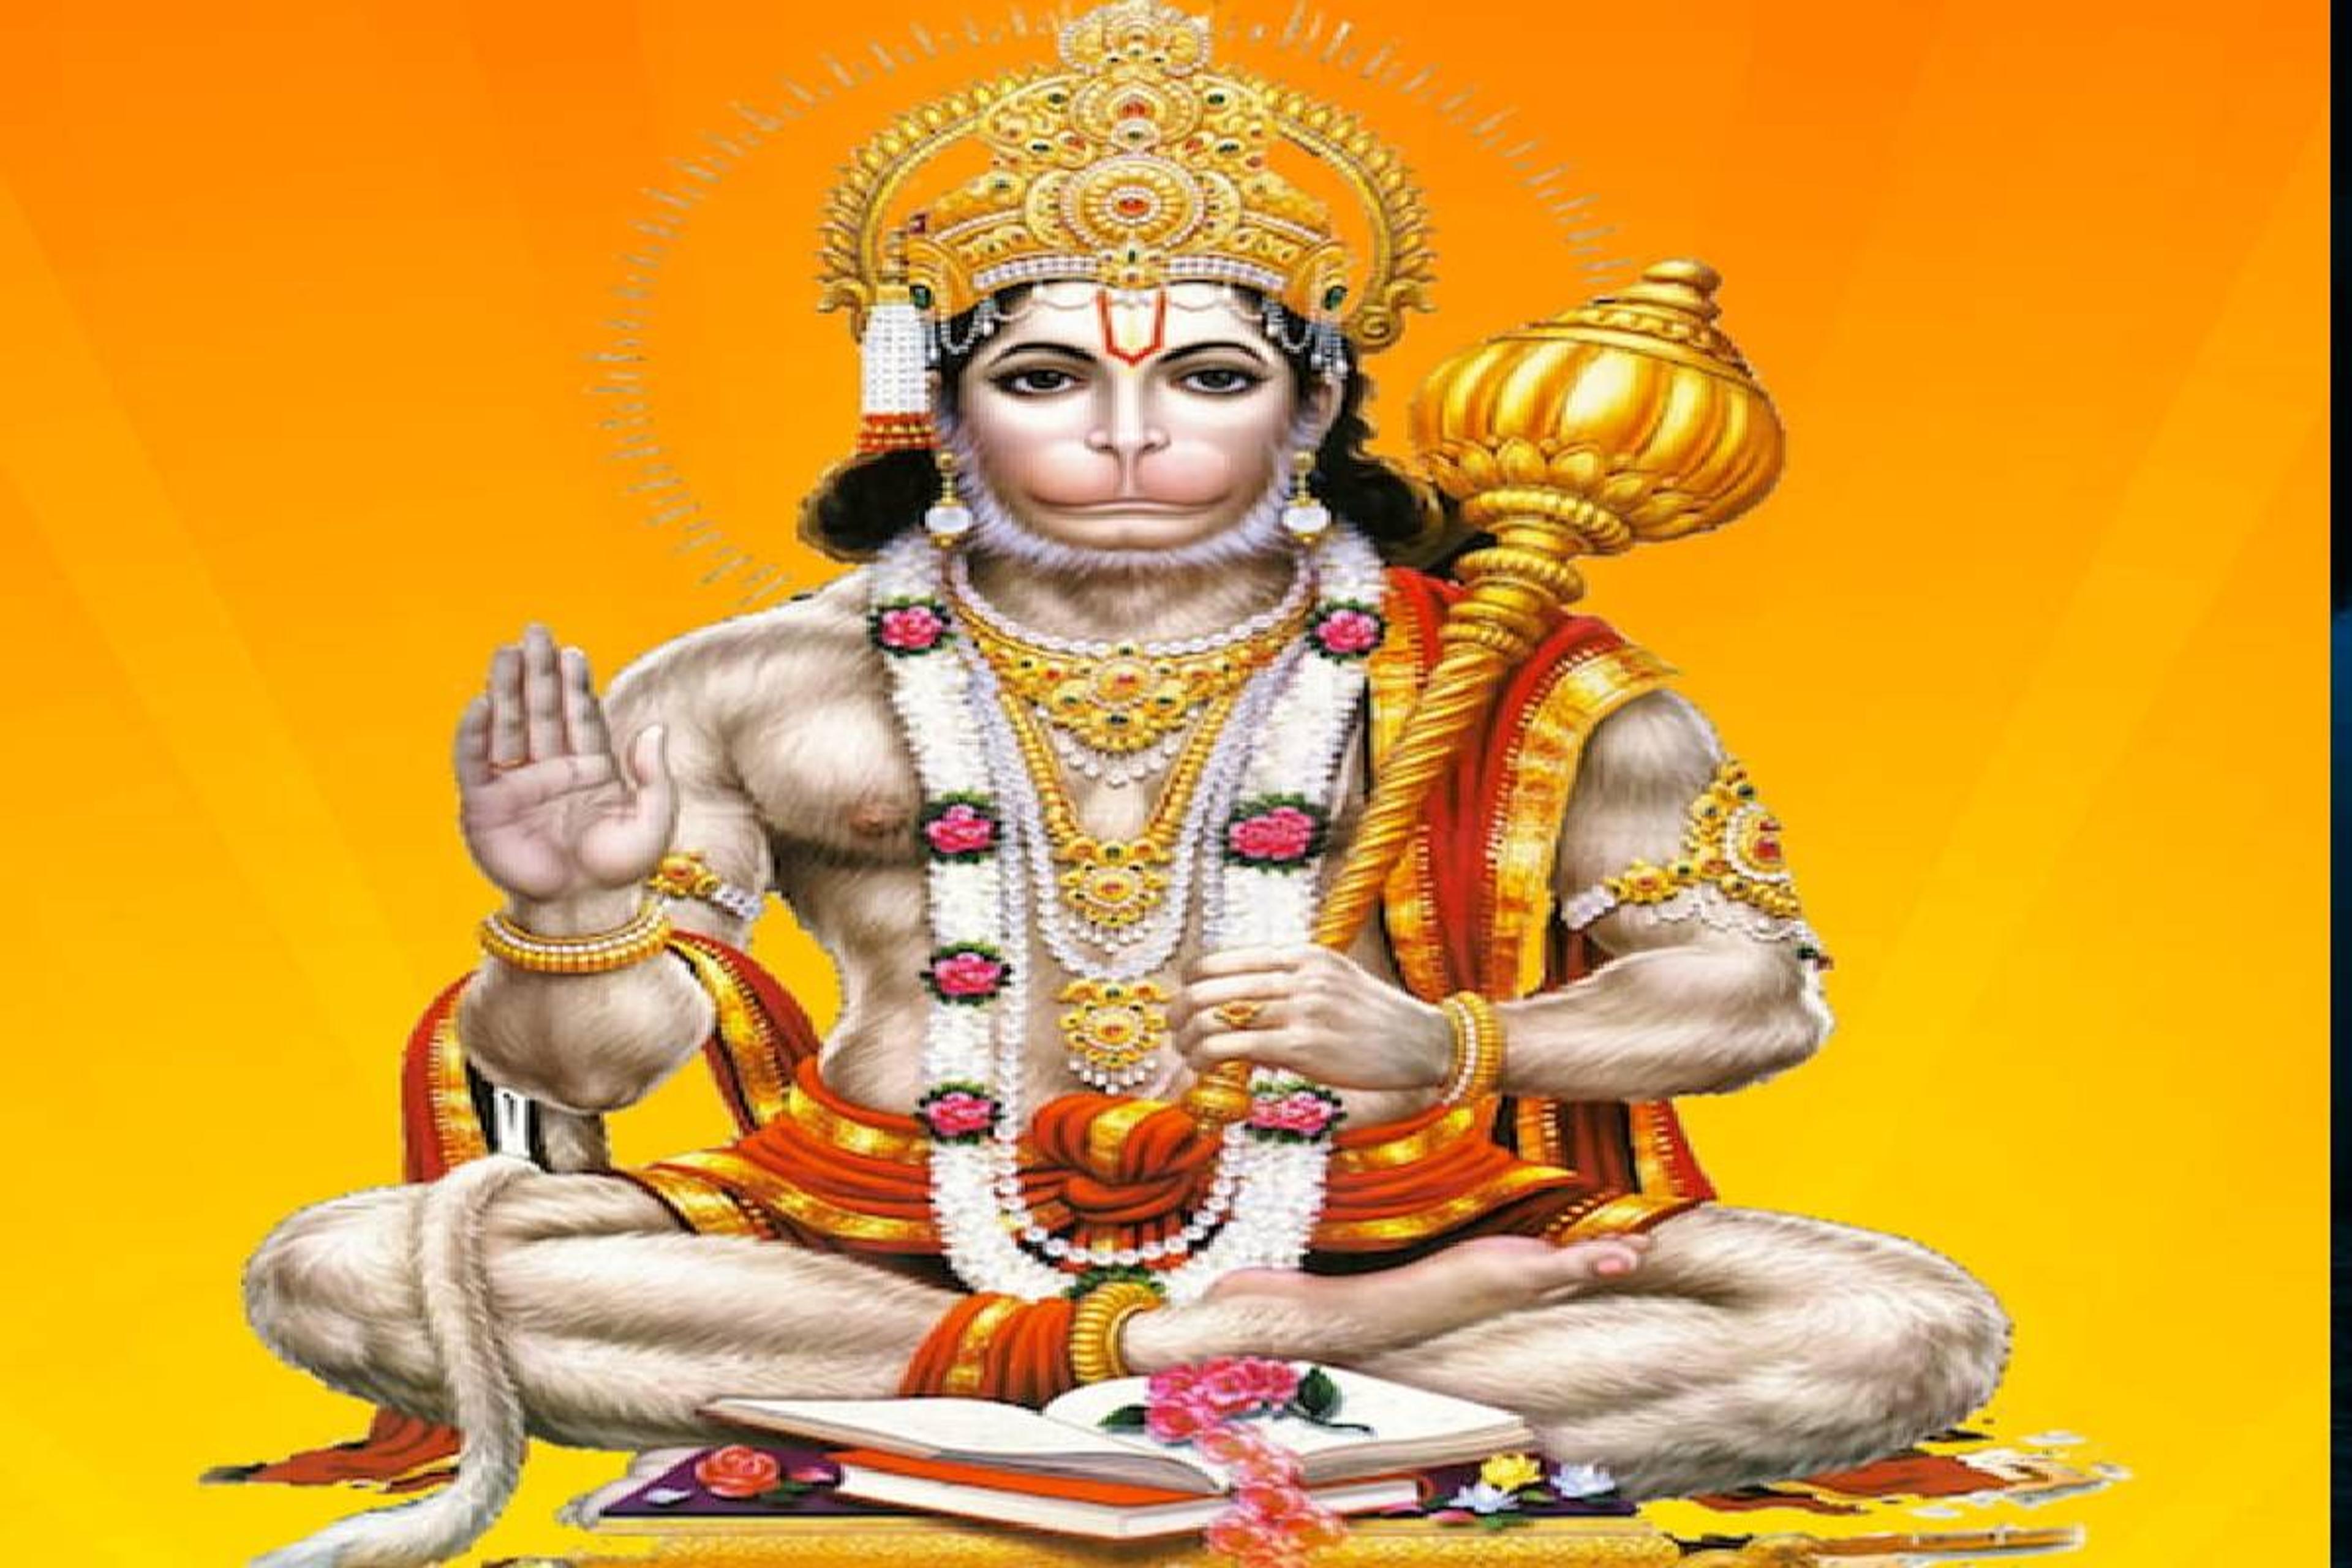 Hanuman Jayanti: हनुमानजी जयंती 23 अप्रैल को, इन मंत्रों के जाप से मिलेगी शक्ति, भक्ति और दृढ़ता, शनि नहीं करते तंग